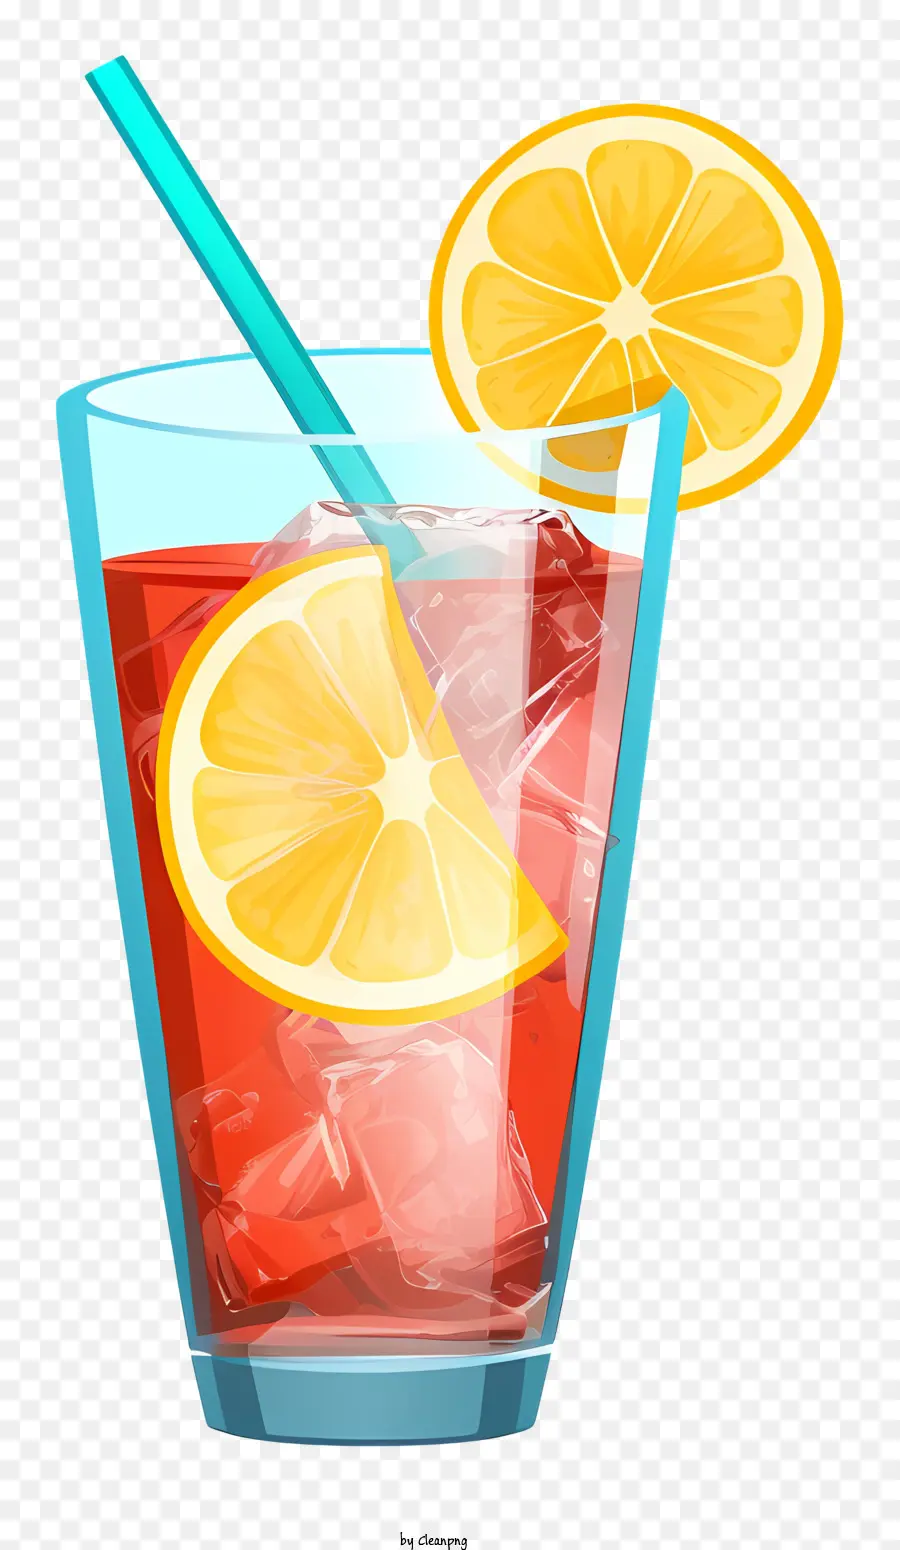 Rot gefärbter Getränkstroh -Zitronenscheiben klarer Glasschwarz Hintergrund - Rotes Getränk in klarem Glas mit Zitronenscheiben